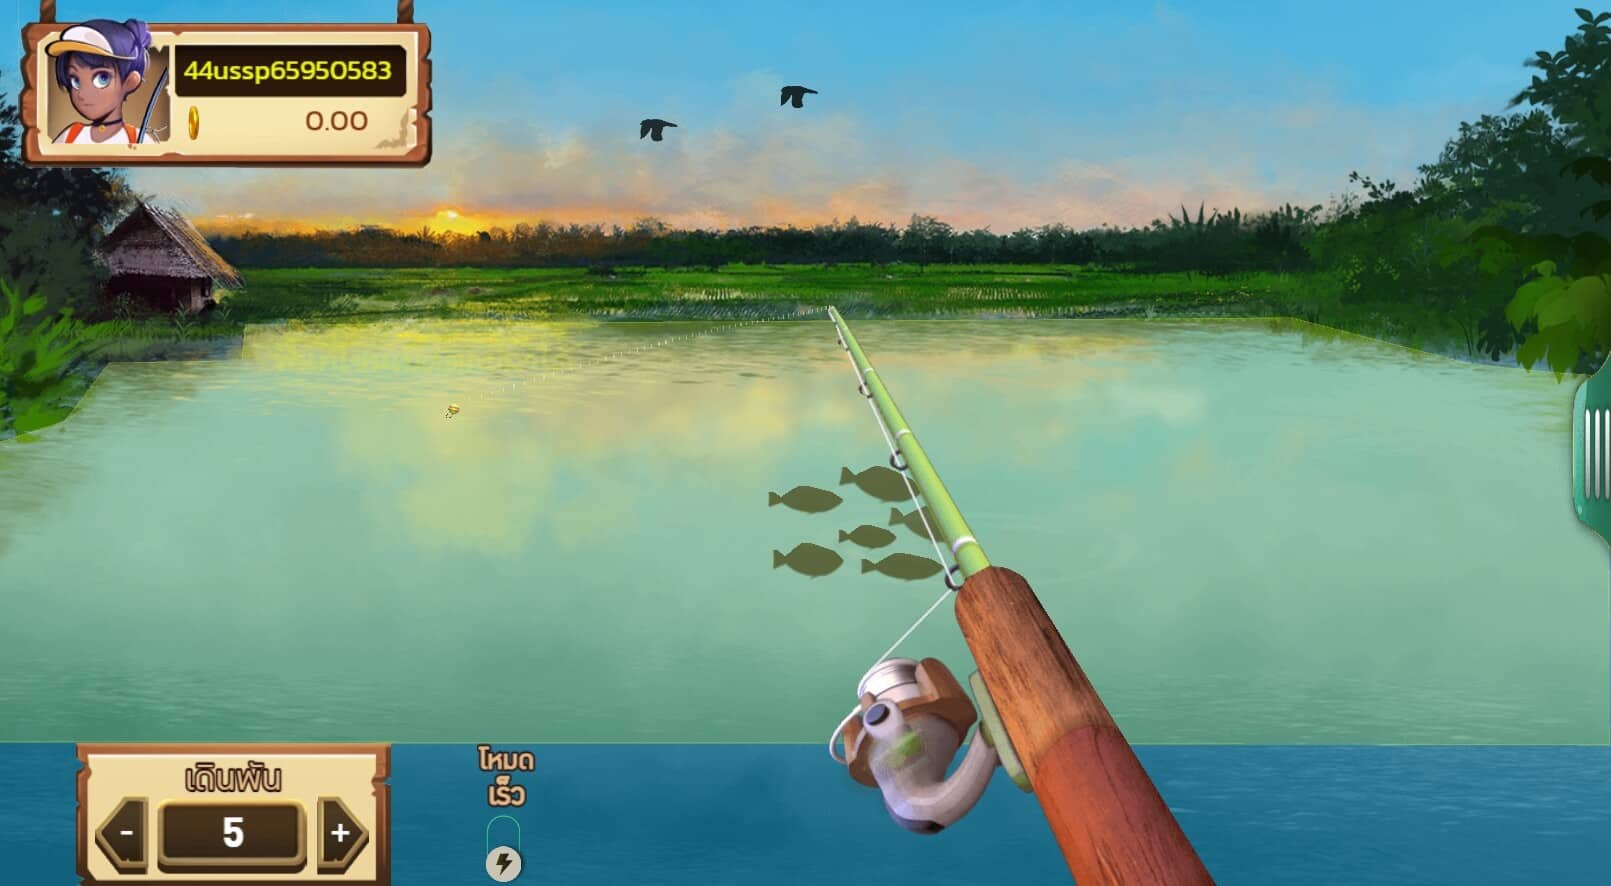 Fishing Field เกมสล็อตออนไลน์จาก AMB Slot เล่นได้ที่ AMBBET วอเลท